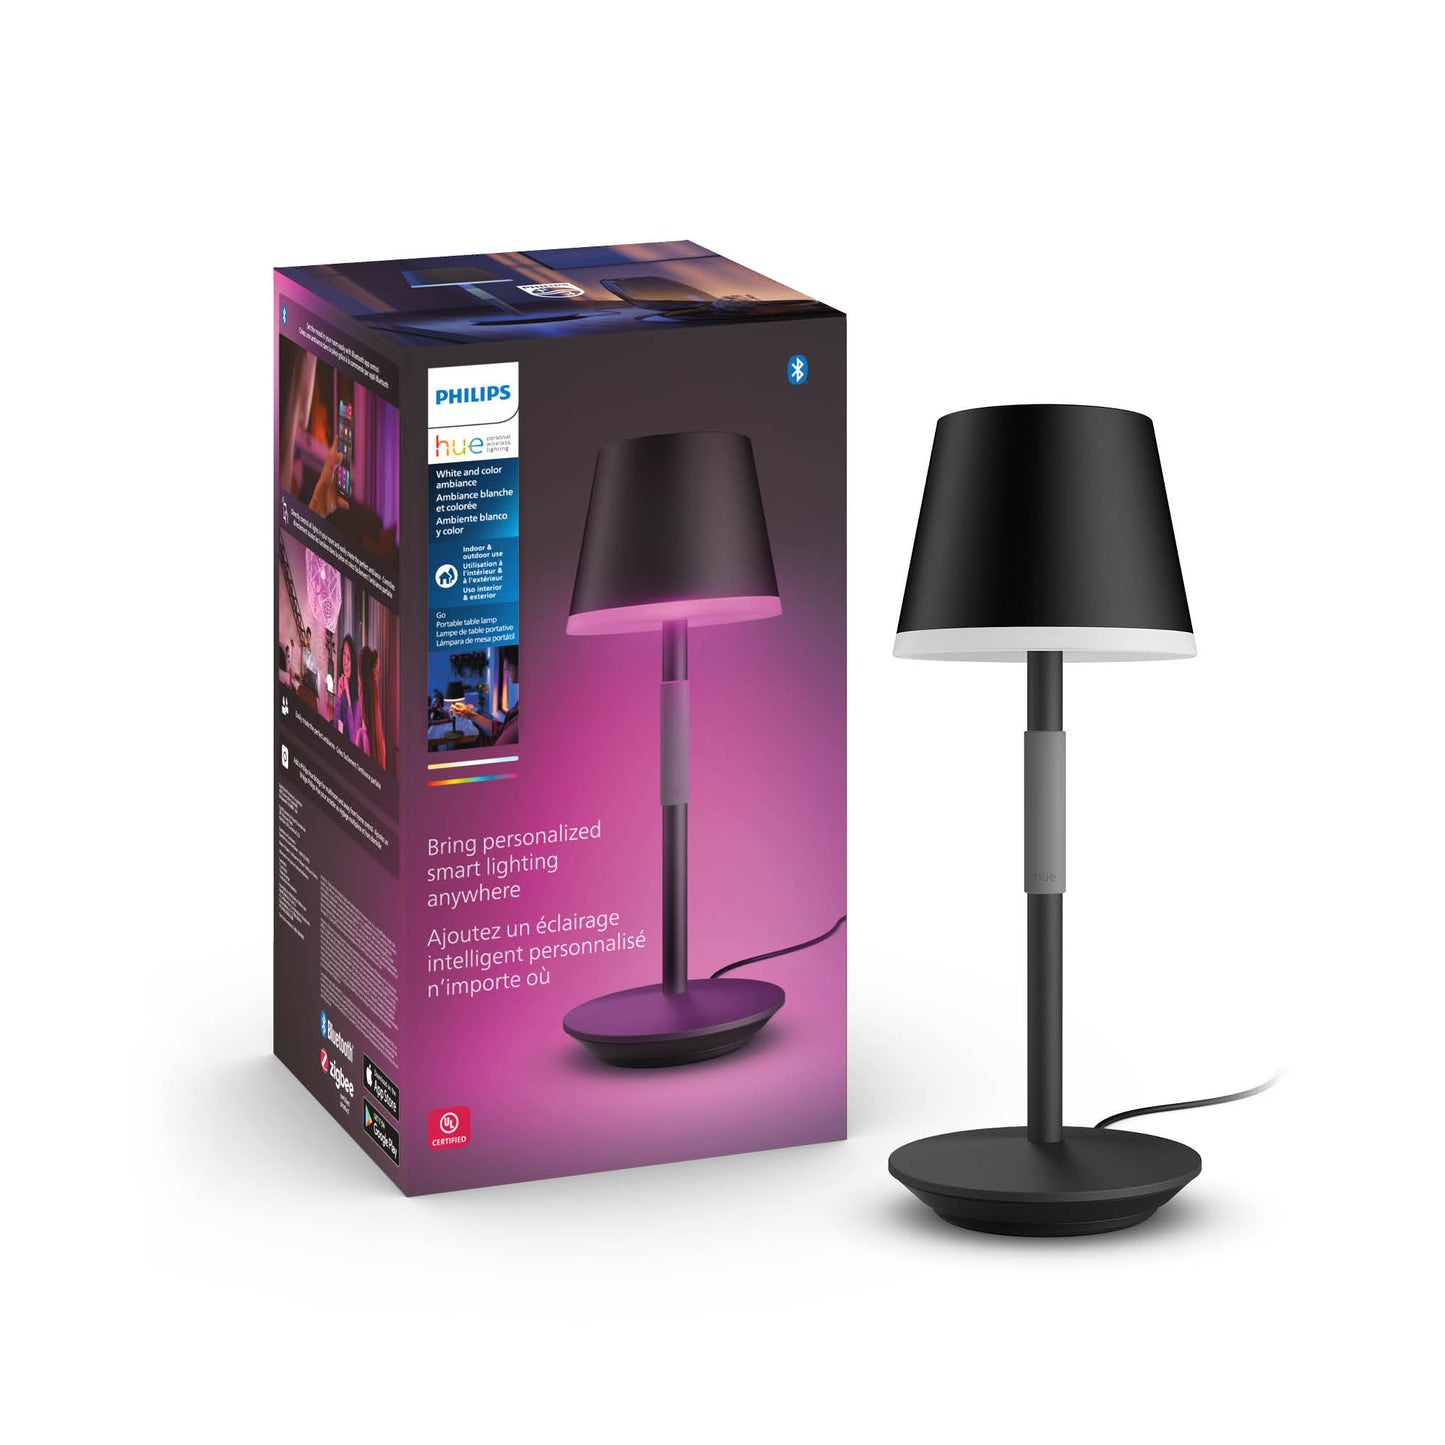 Philips Hue Hue Go portable table lamp B EU/UK